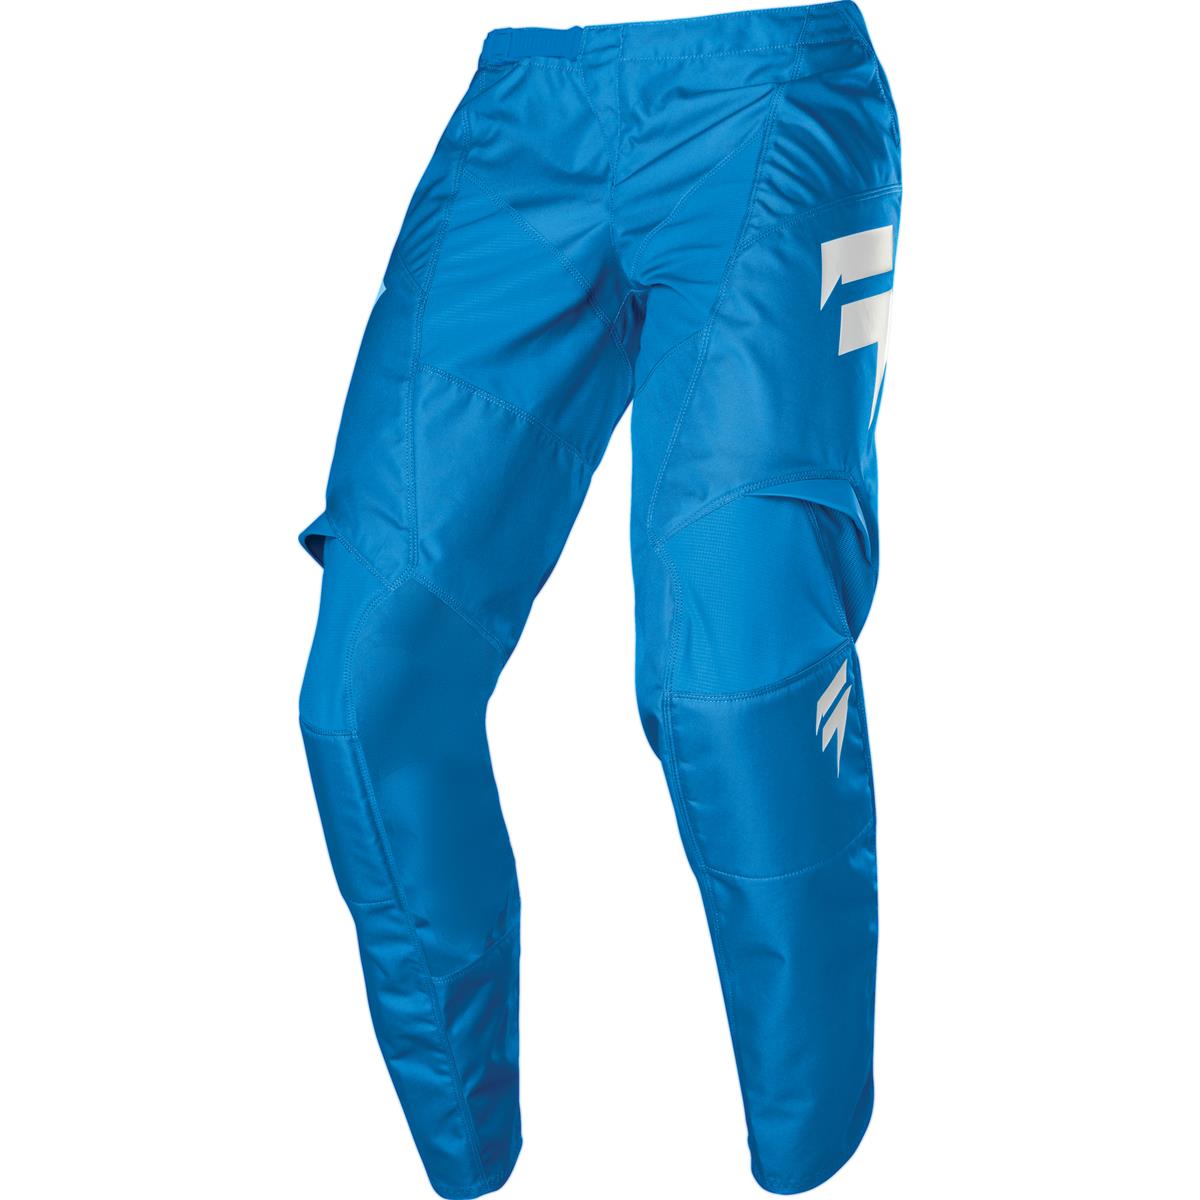 Shift Pantalon MX Whit3 Label Race Bleu